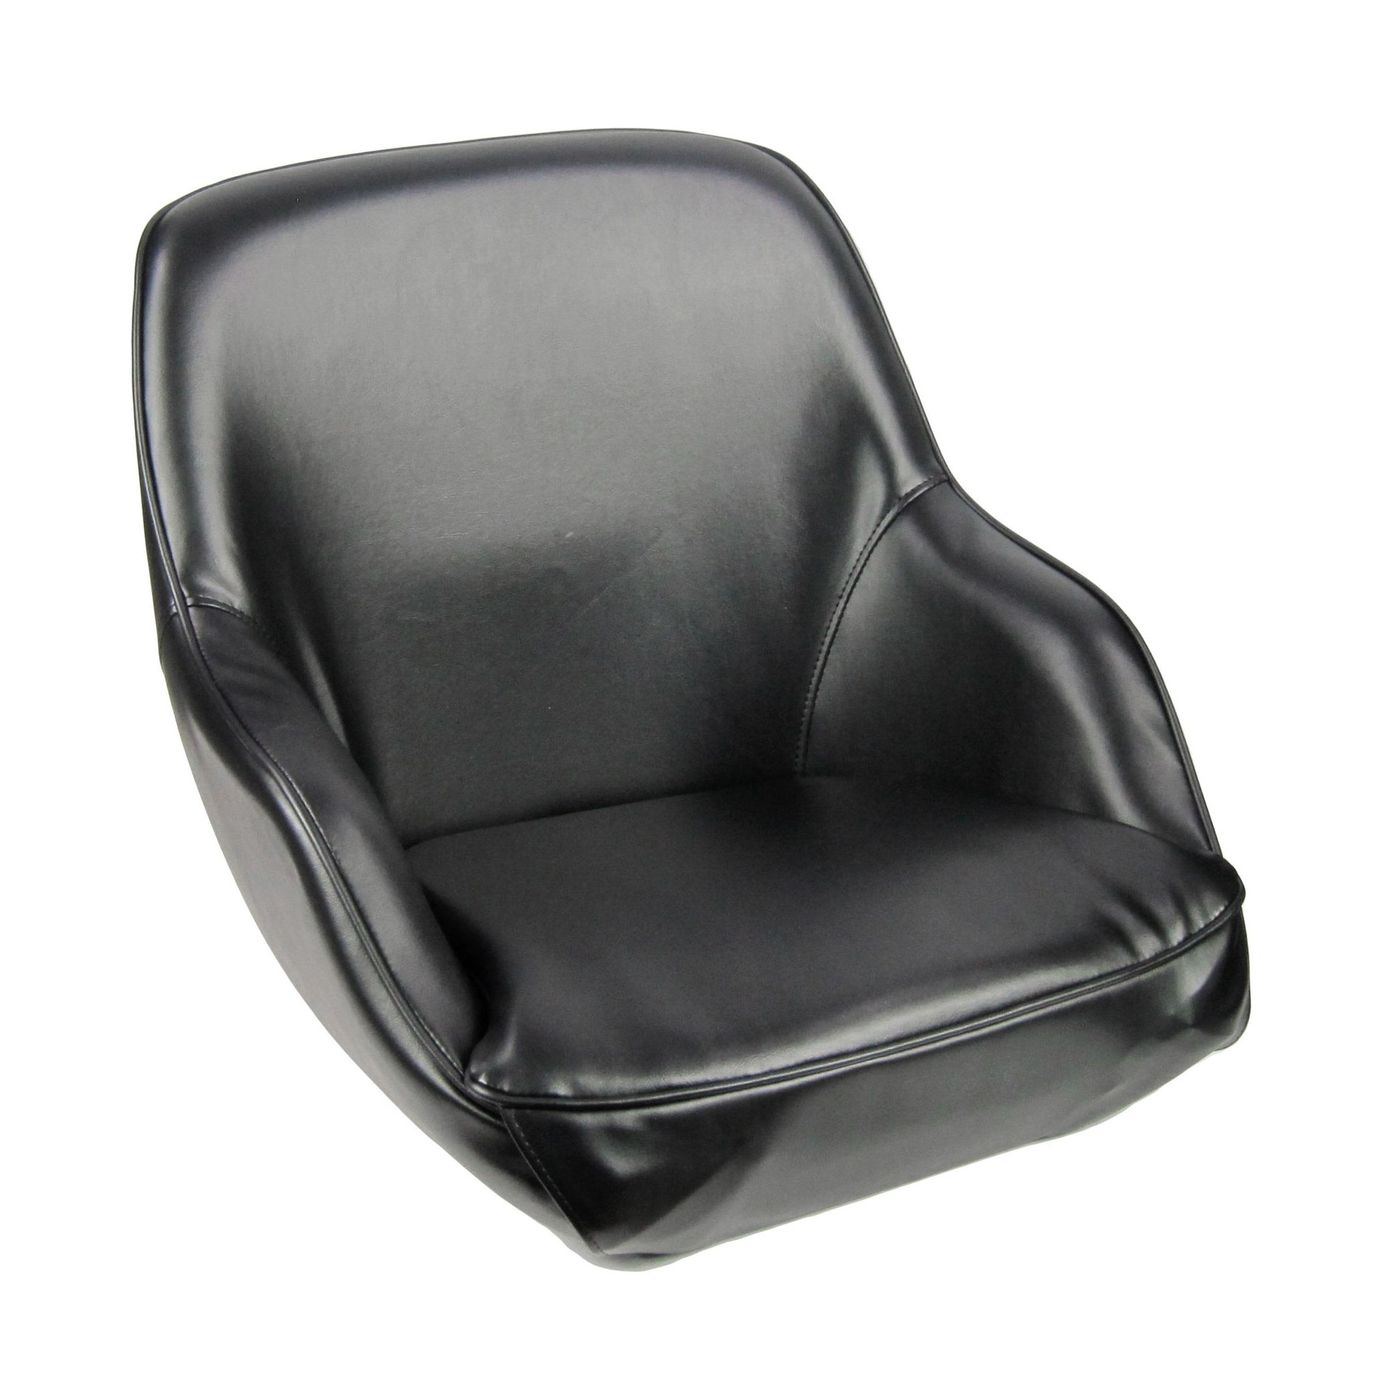 Кресло ADMIRAL мягкое, материал черный винил 1061420990 tetchair стул chilly mod 7095 1 ткань металл 45x53x88 см высота до сиденья 50 см коралловый barkhat 15 черный